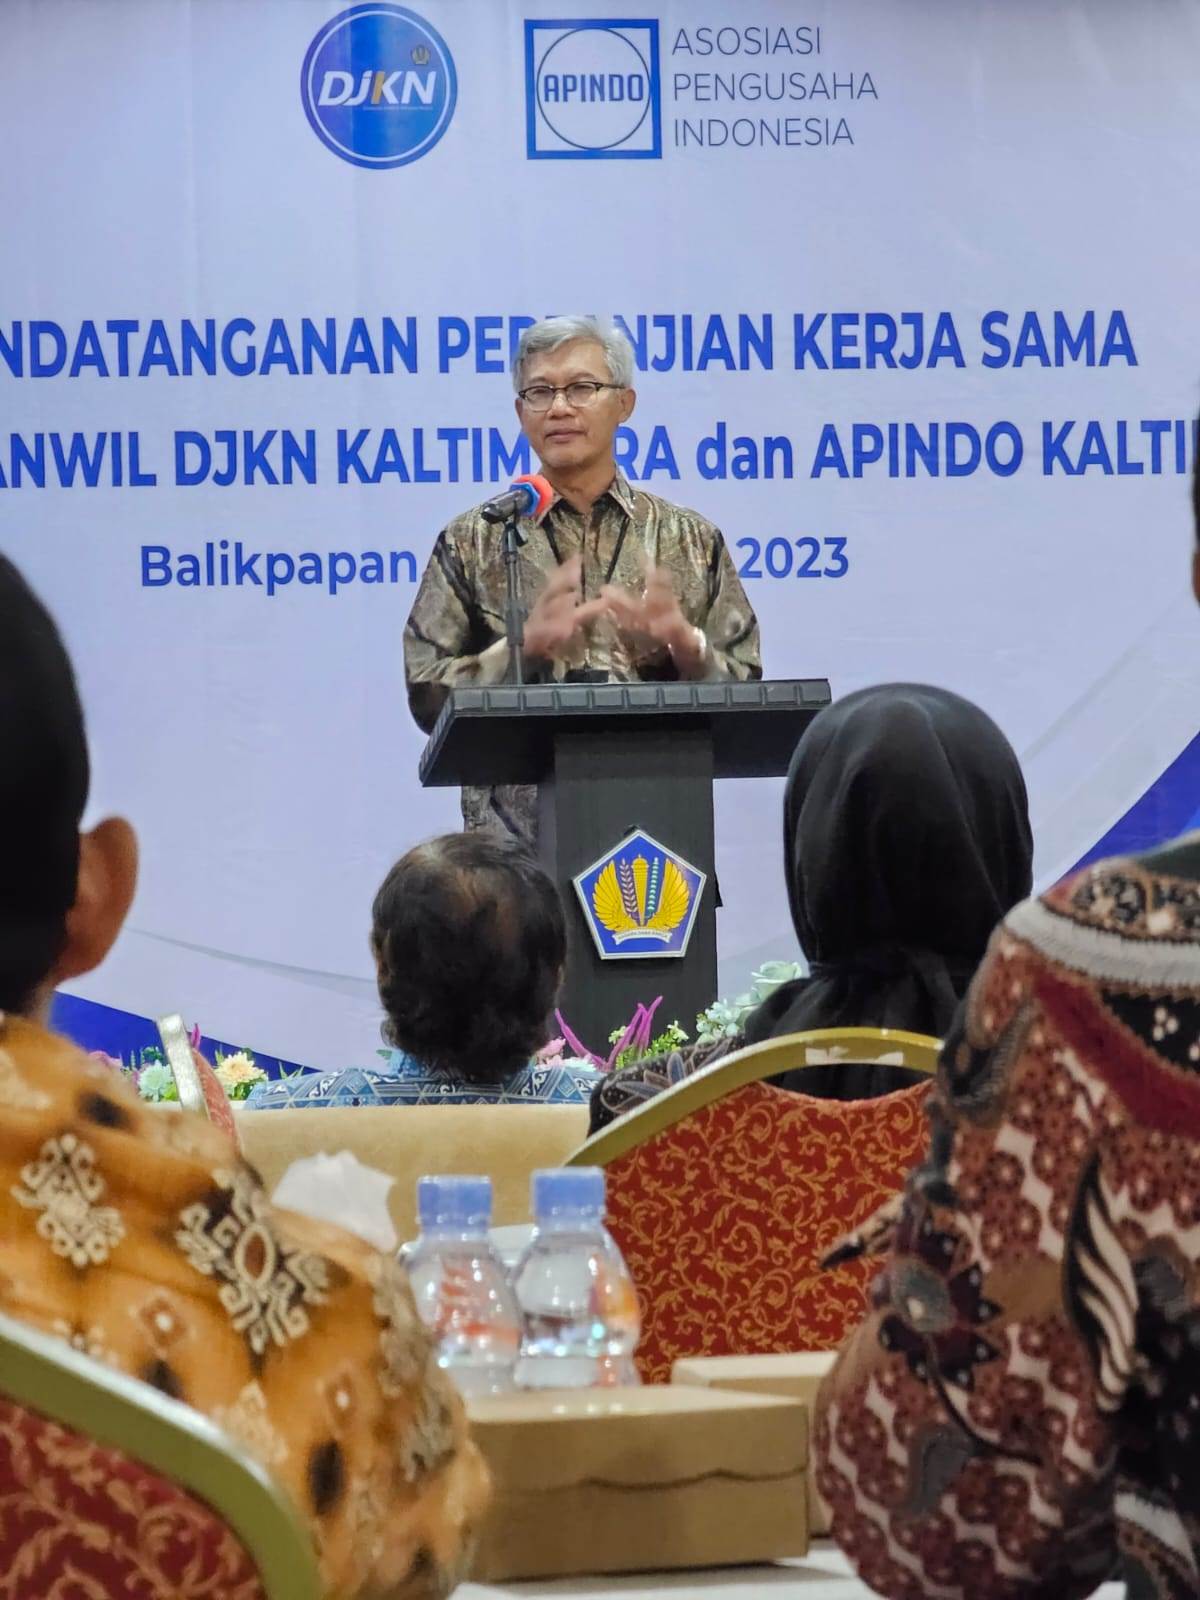 Perluas Basis Lelang di Sektor Swasta, Kanwil DJKN Kaltimtara lakukan Penandatanganan Perjanjian Kerja Sama dengan APINDO Kalimantan Timur